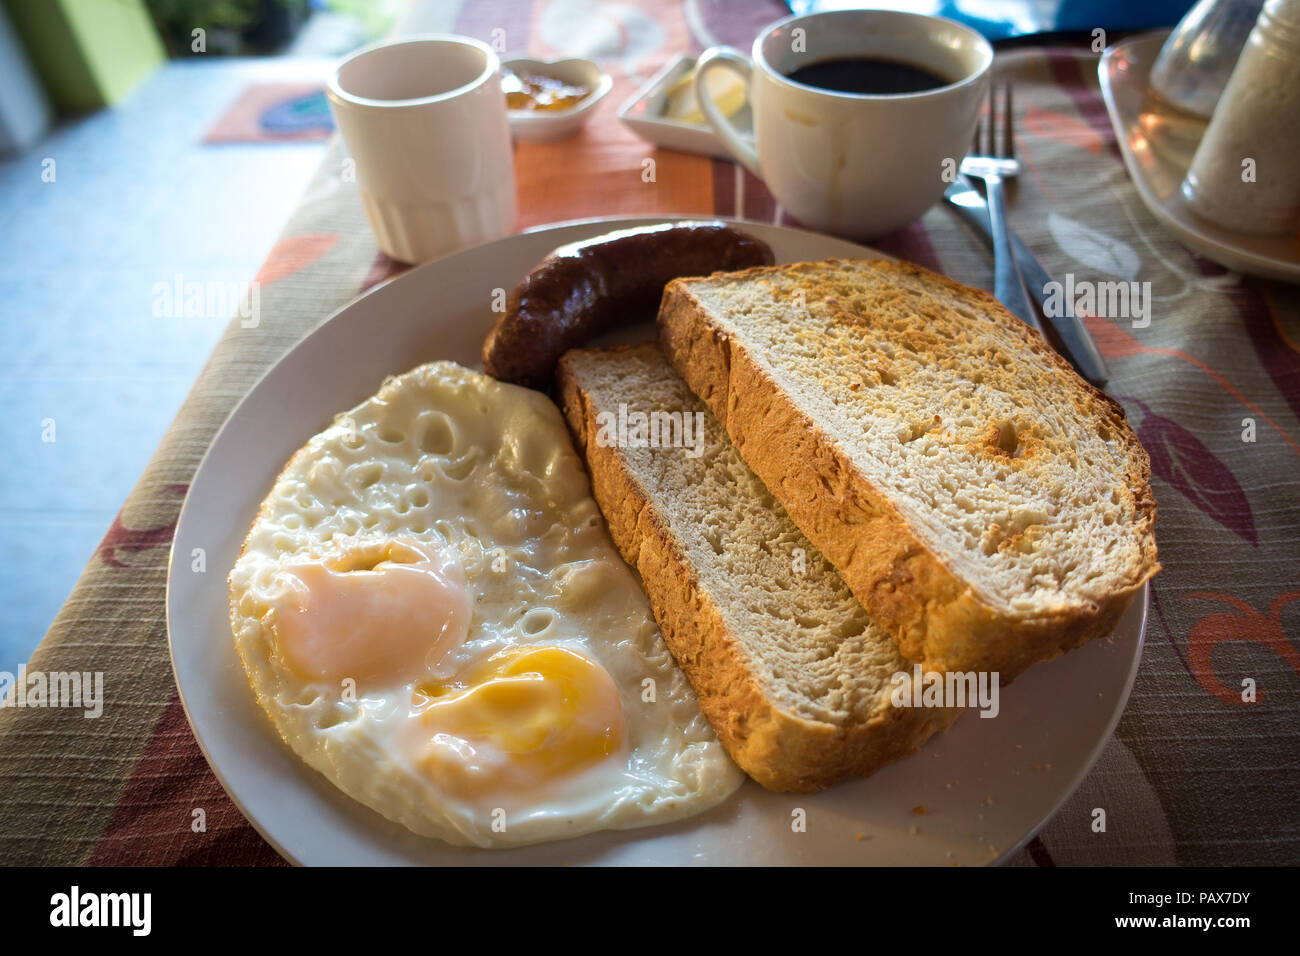 Frische resort Frühstück mit Kaffee, Spiegeleier, Würstchen und Brot auf dem Teller - Port Barton, Palawan - Philippinen Stockfoto